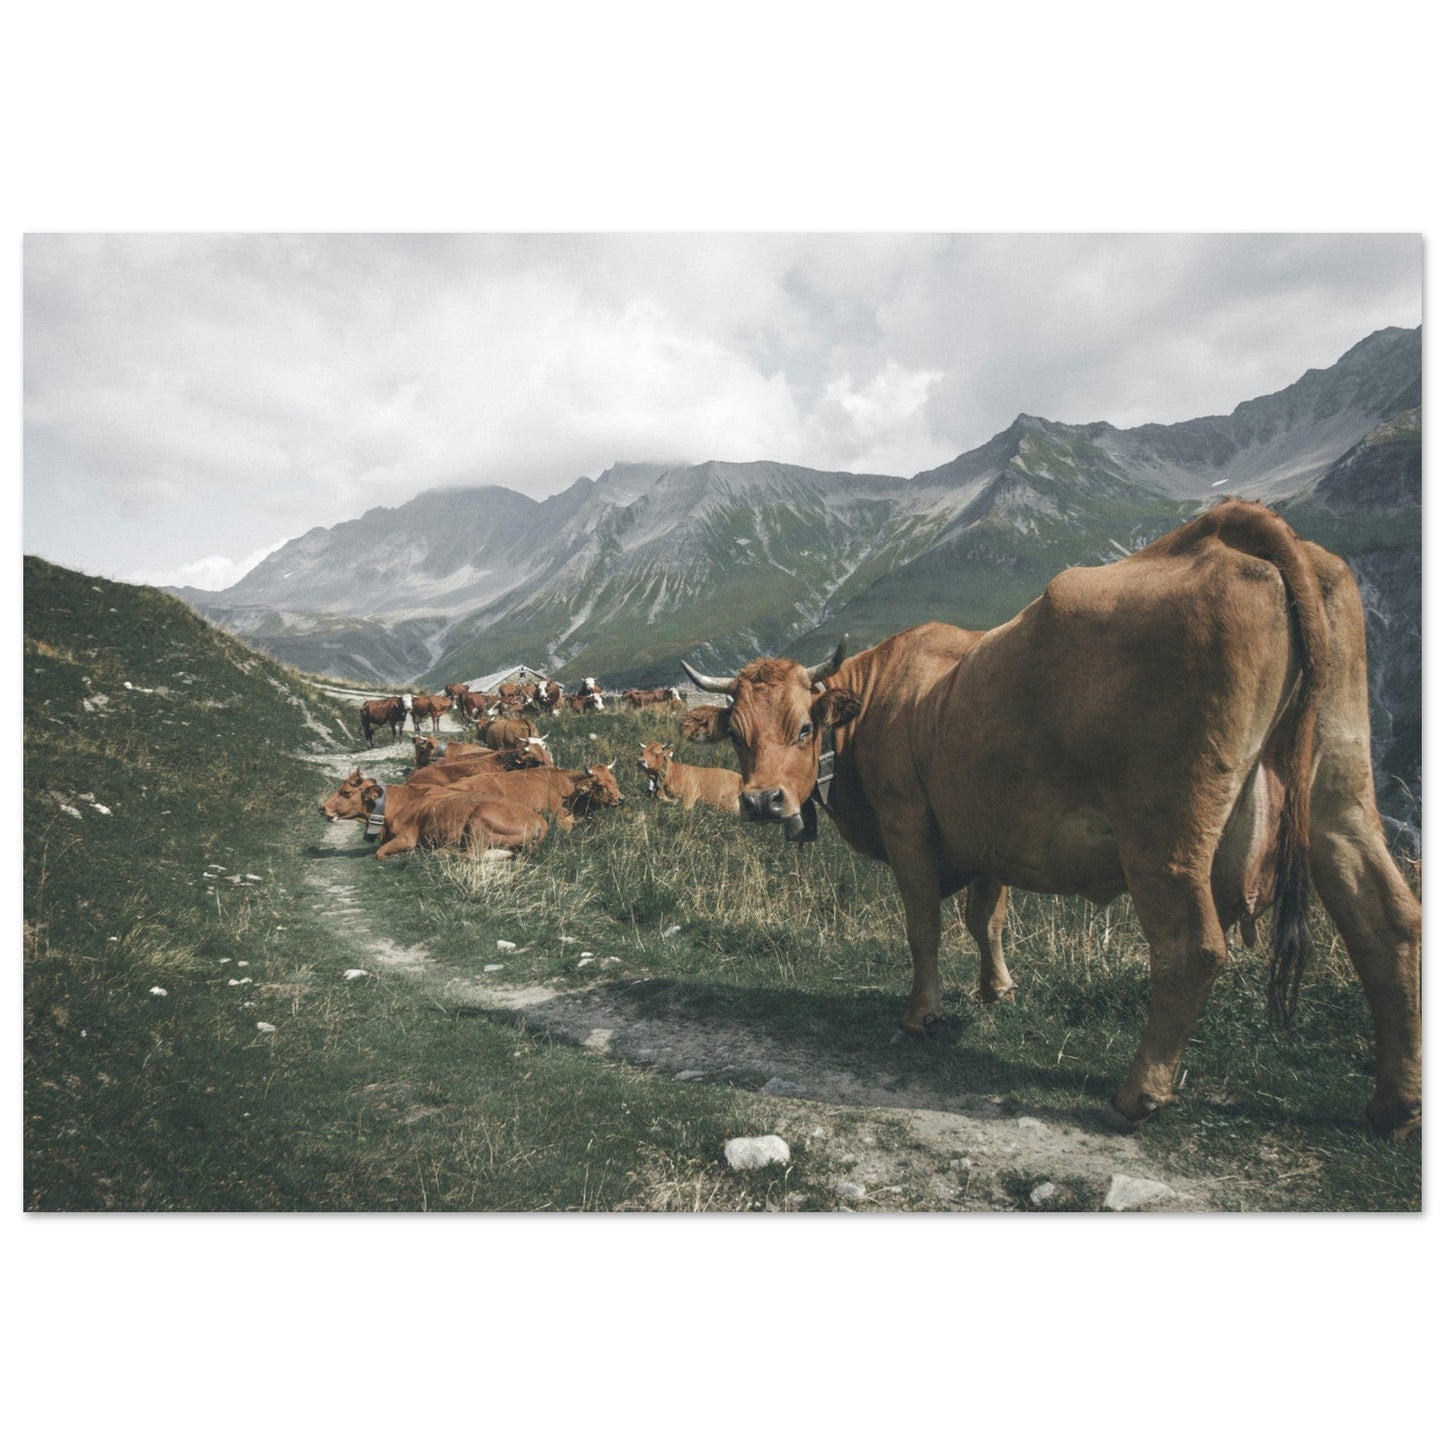 Vente Photo de vaches sur un chemin en Savoie #2 - Tableau photo paysage